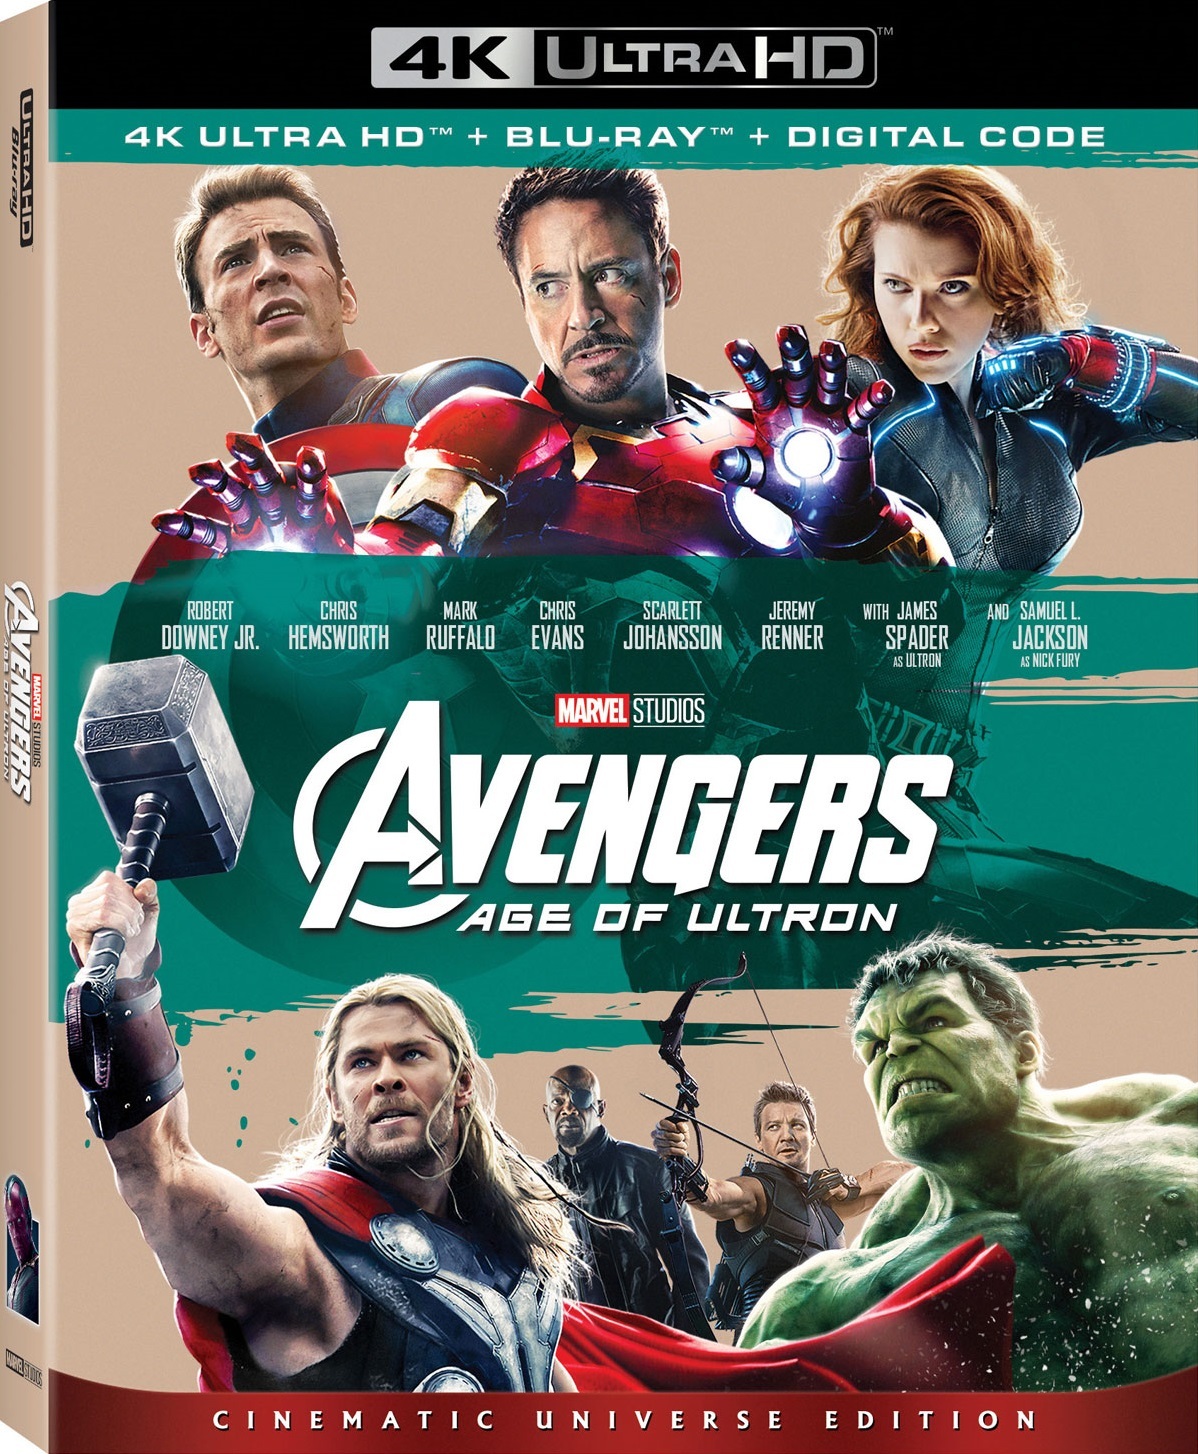 [复仇者联盟2].Avengers.Age.of.Ultron.2015.UHD.BluRay.2160p.HEVC.TrueHD.7.1-TERMiNAL    55.11G-1.jpg